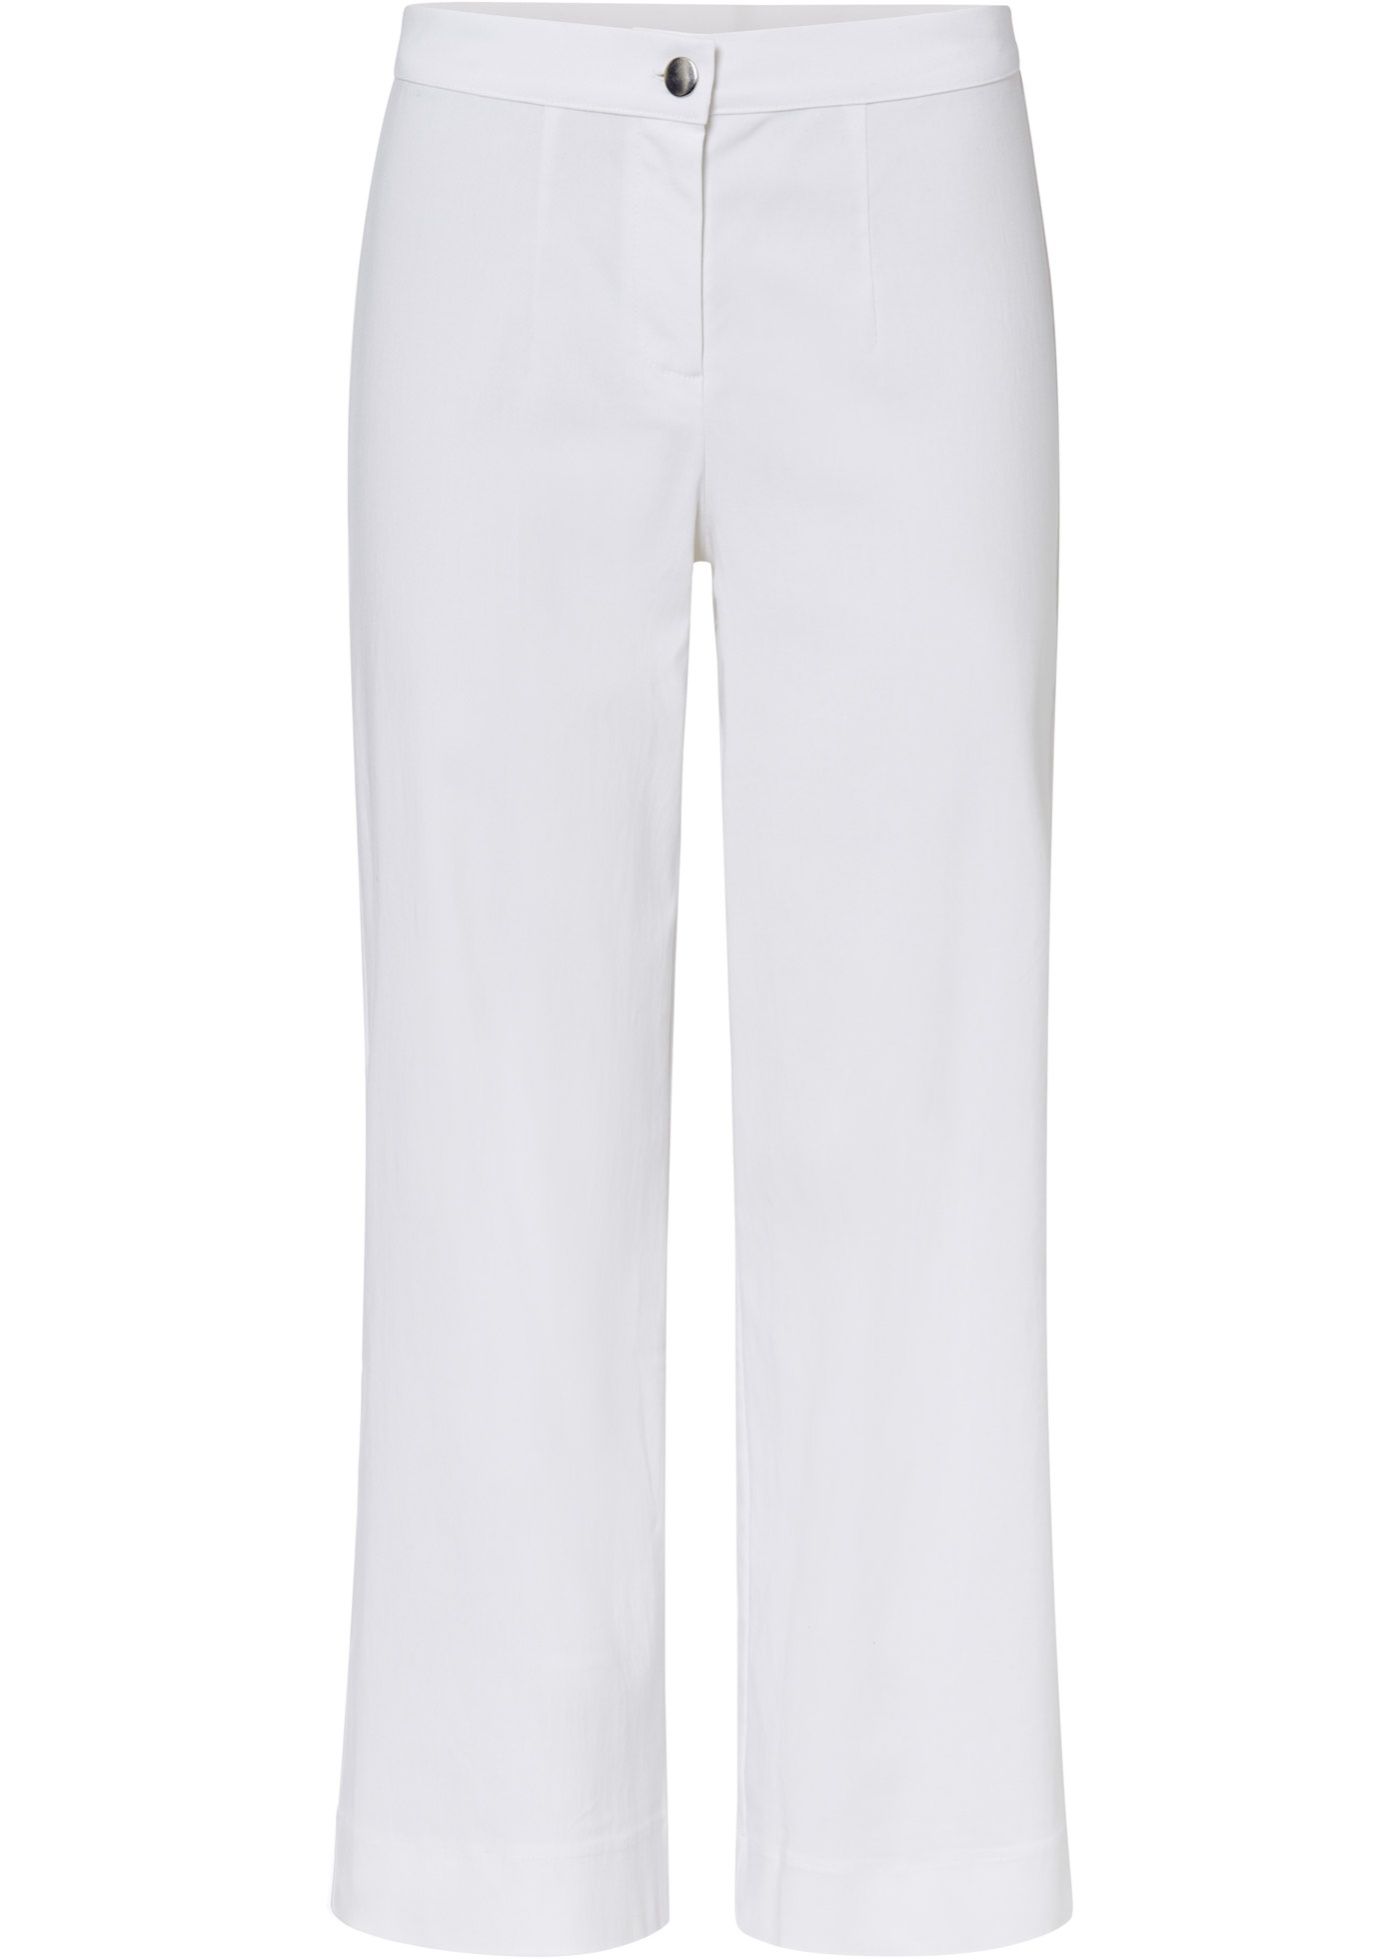 Bonprix BODYFLIRT 7/8 kalhoty Barva: Bílá, Mezinárodní velikost: M, EU velikost: 42